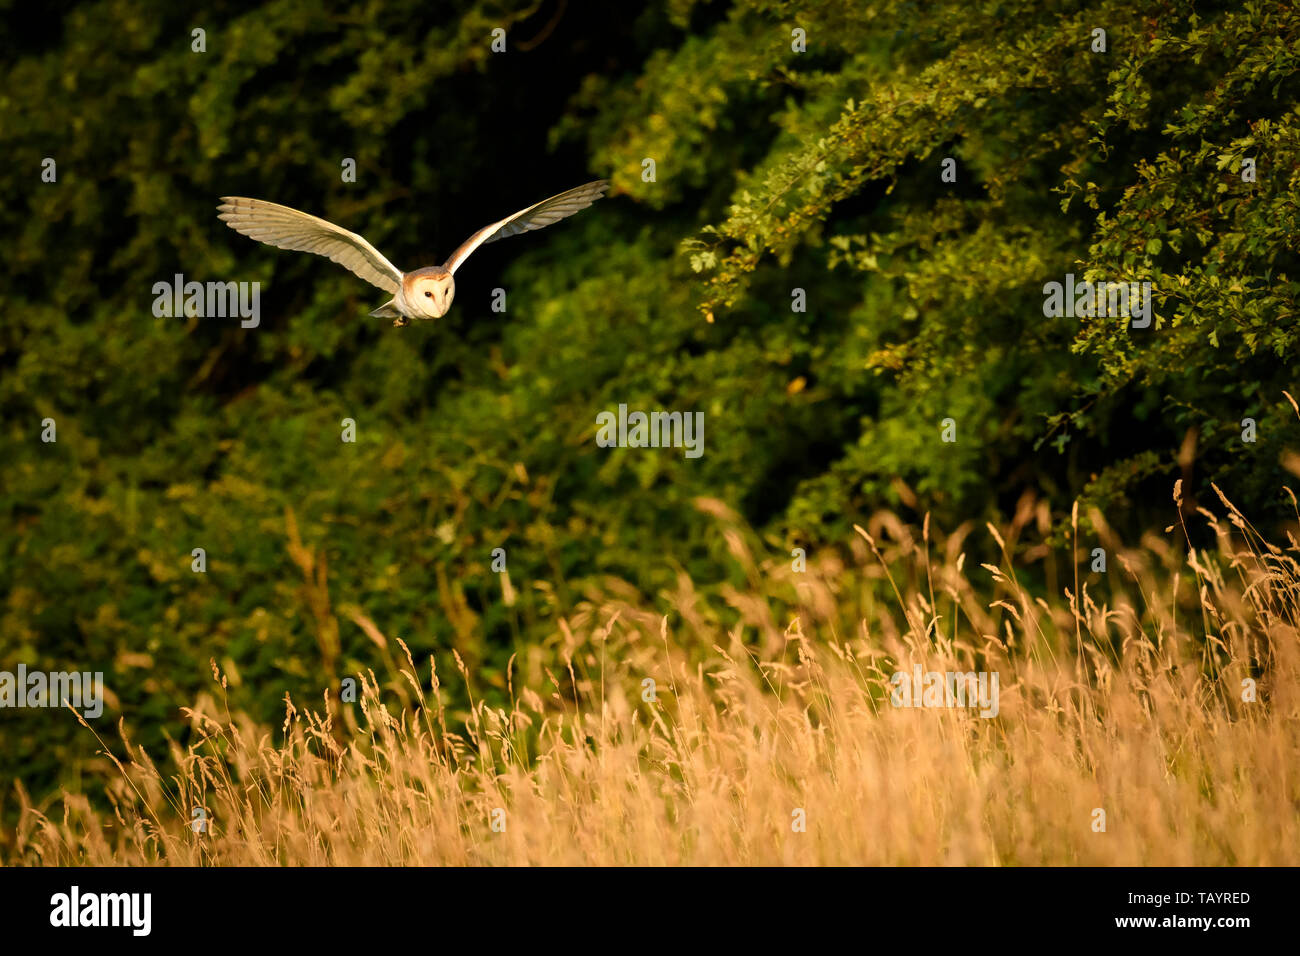 Il barbagianni (Tyto alba) illuminato dalla luce del sole serale in habitat di caccia, volando a bassa quota su terreni erbosi, ali stese - Baildon, West Yorkshire, Inghilterra, Regno Unito. Foto Stock